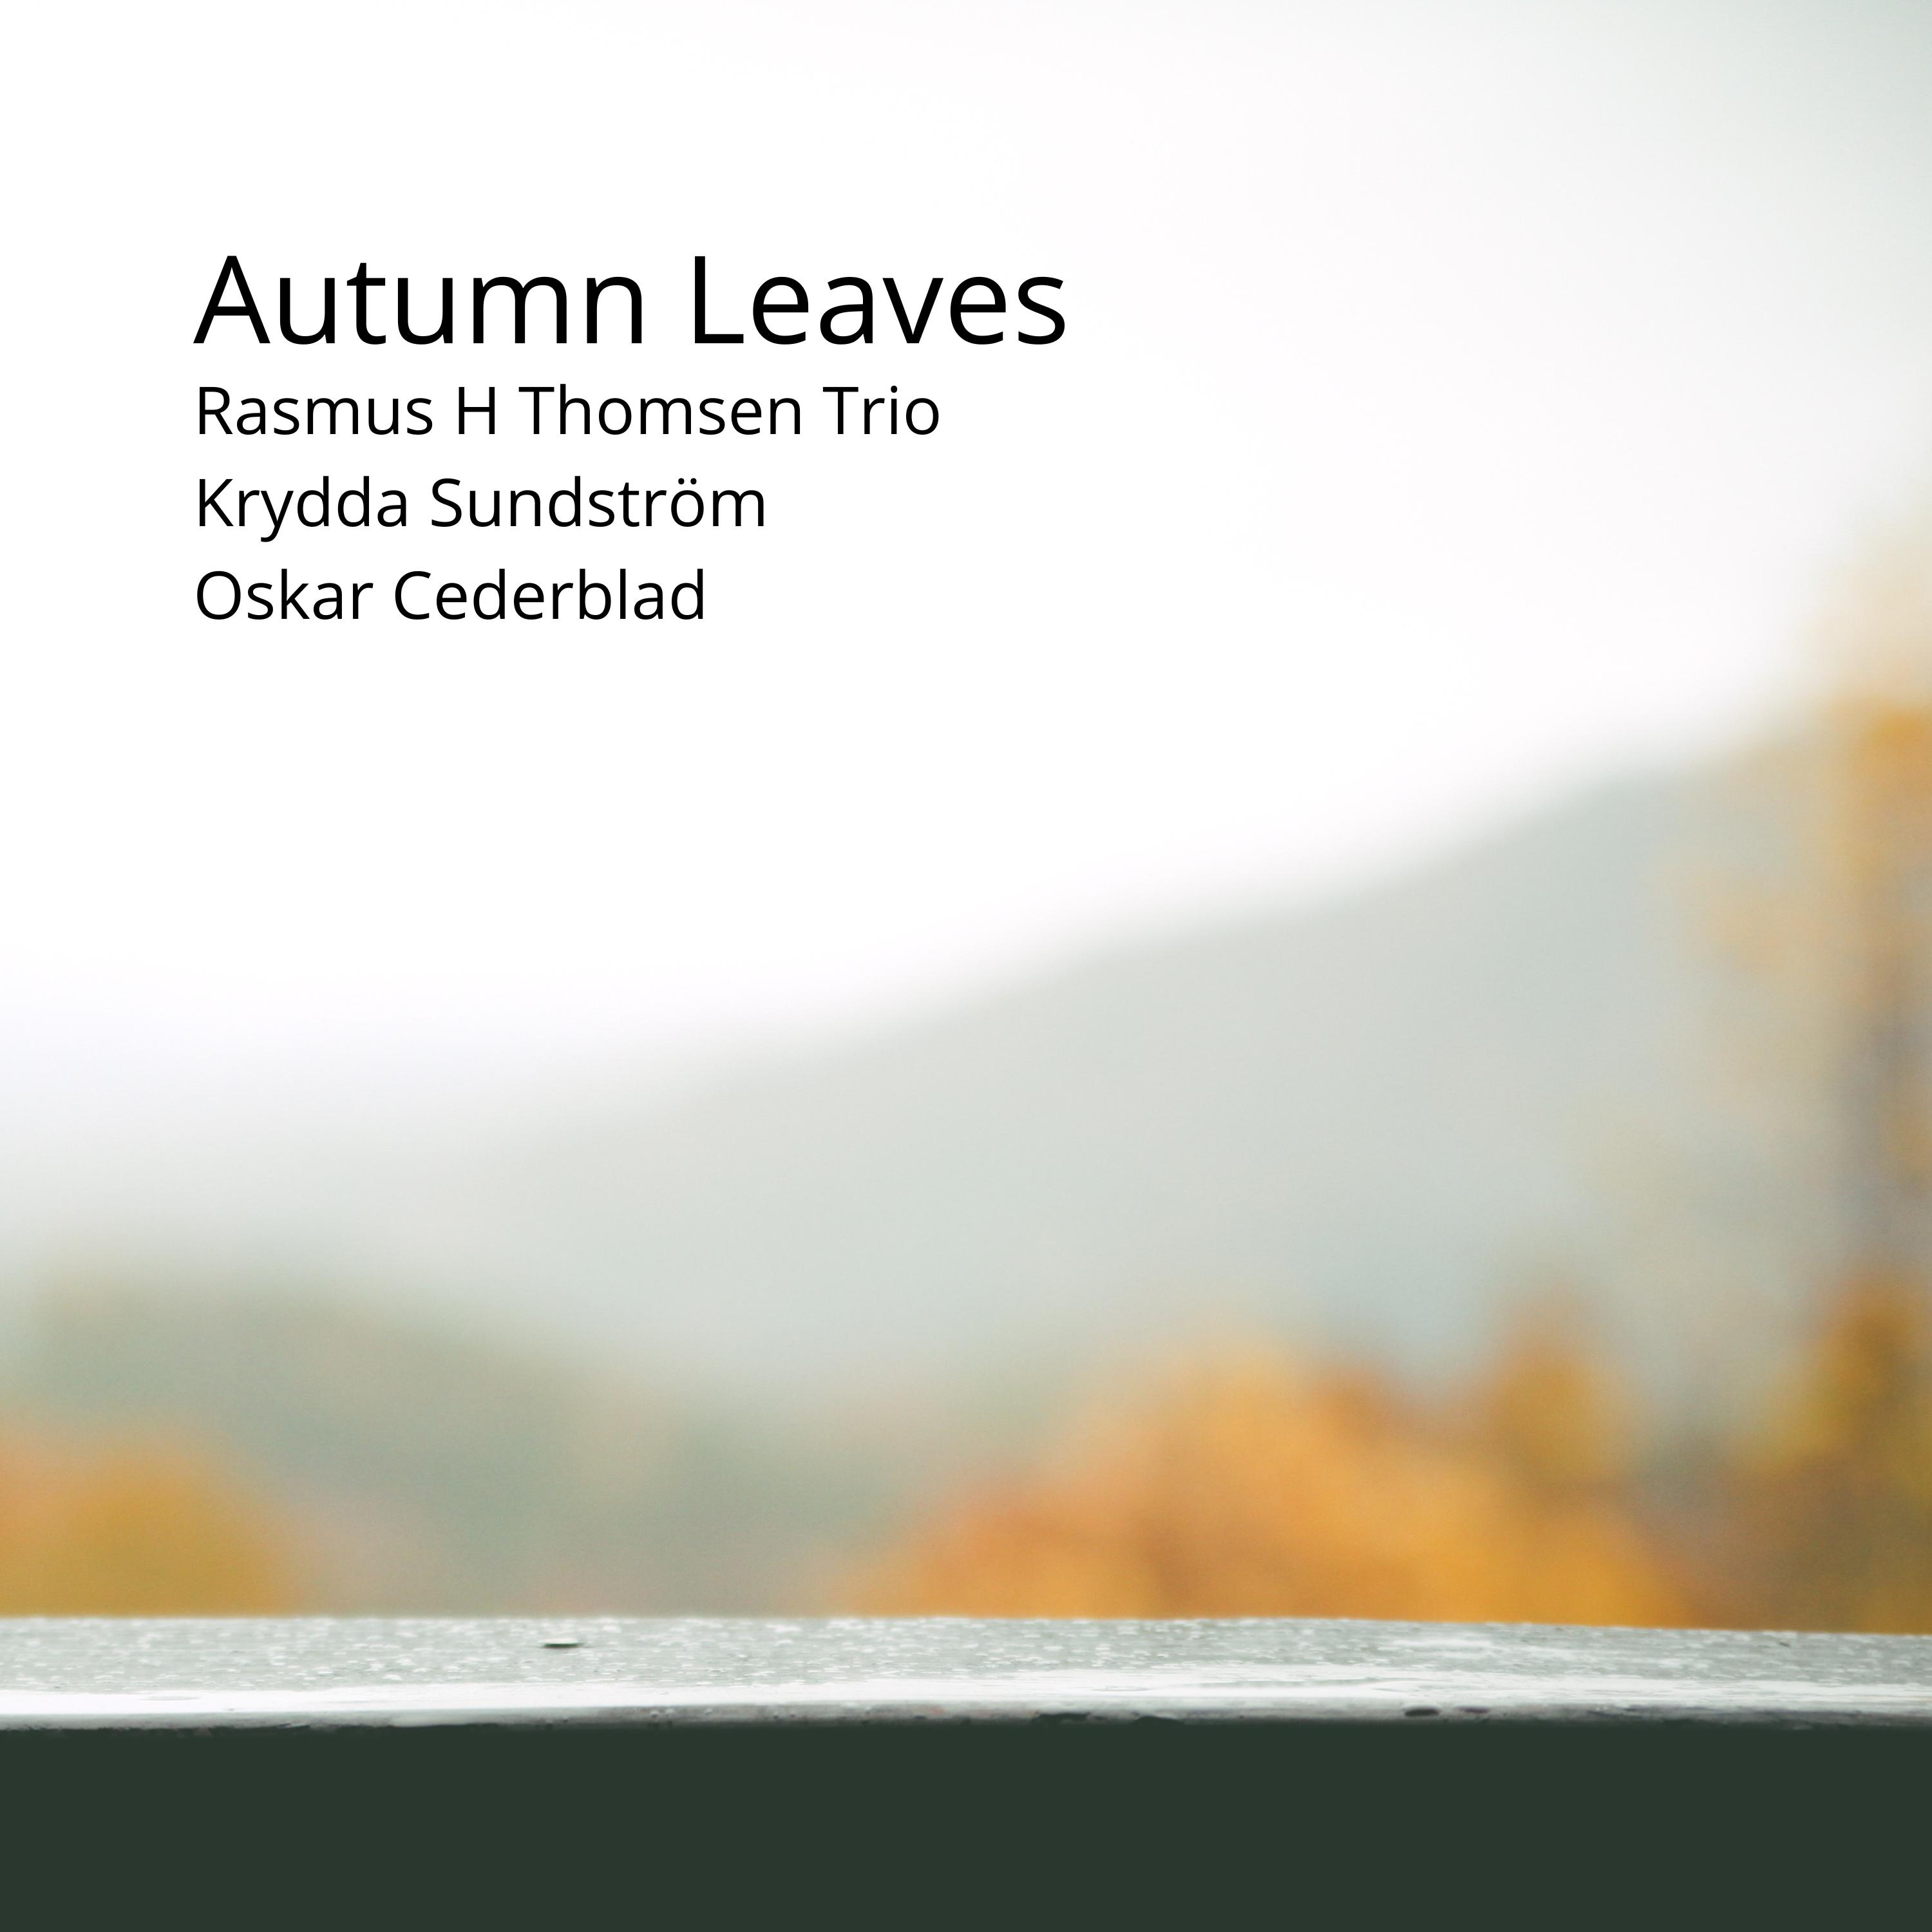 Rasmus H Thomsen Trio - Autumn Leaves